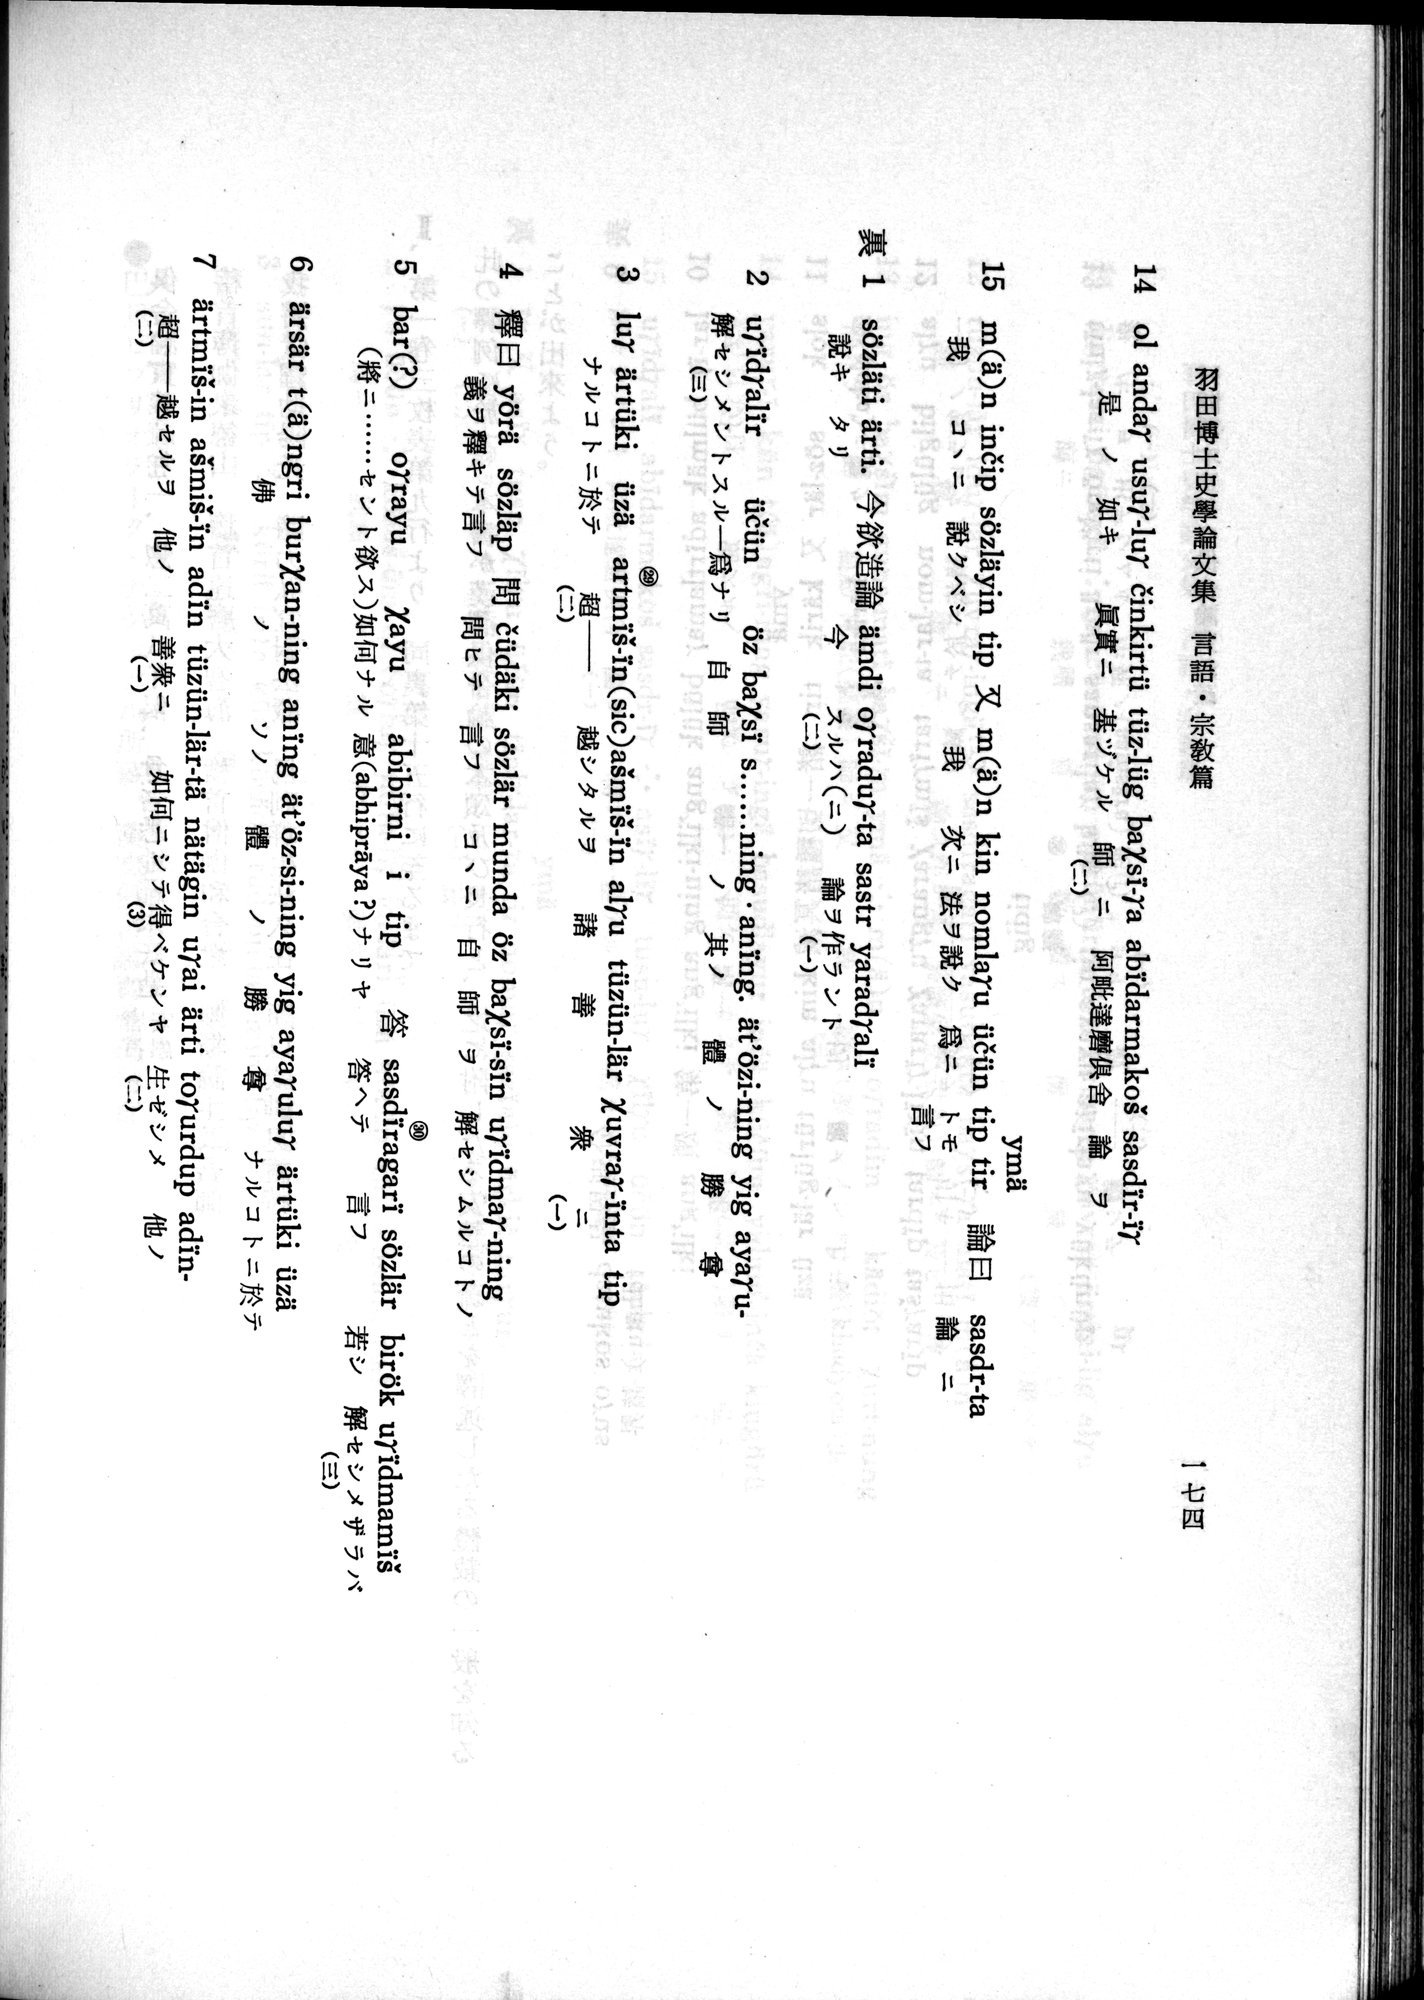 羽田博士史学論文集 : vol.2 / 236 ページ（白黒高解像度画像）